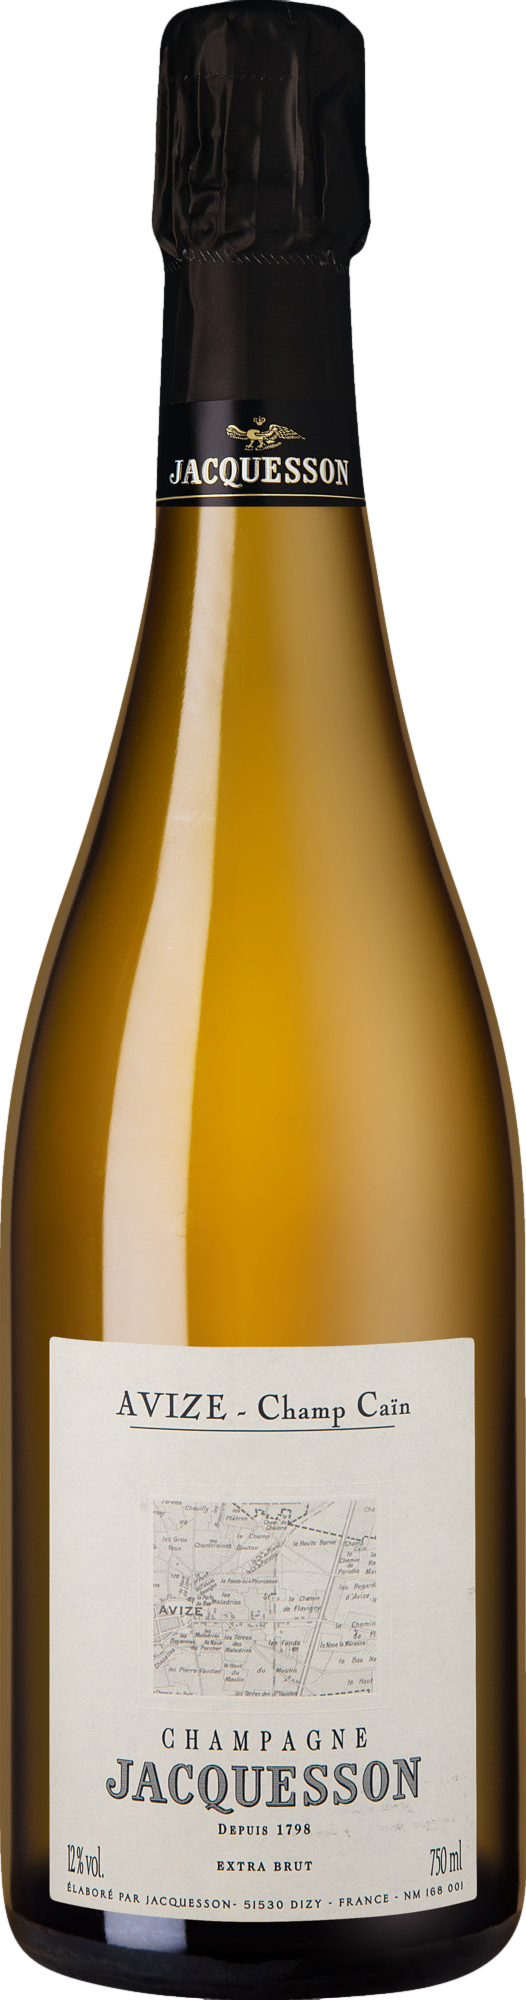 Champagne Jacquesson Avize Champ Cain 2013 Šumivé 12.5% 0.75 l